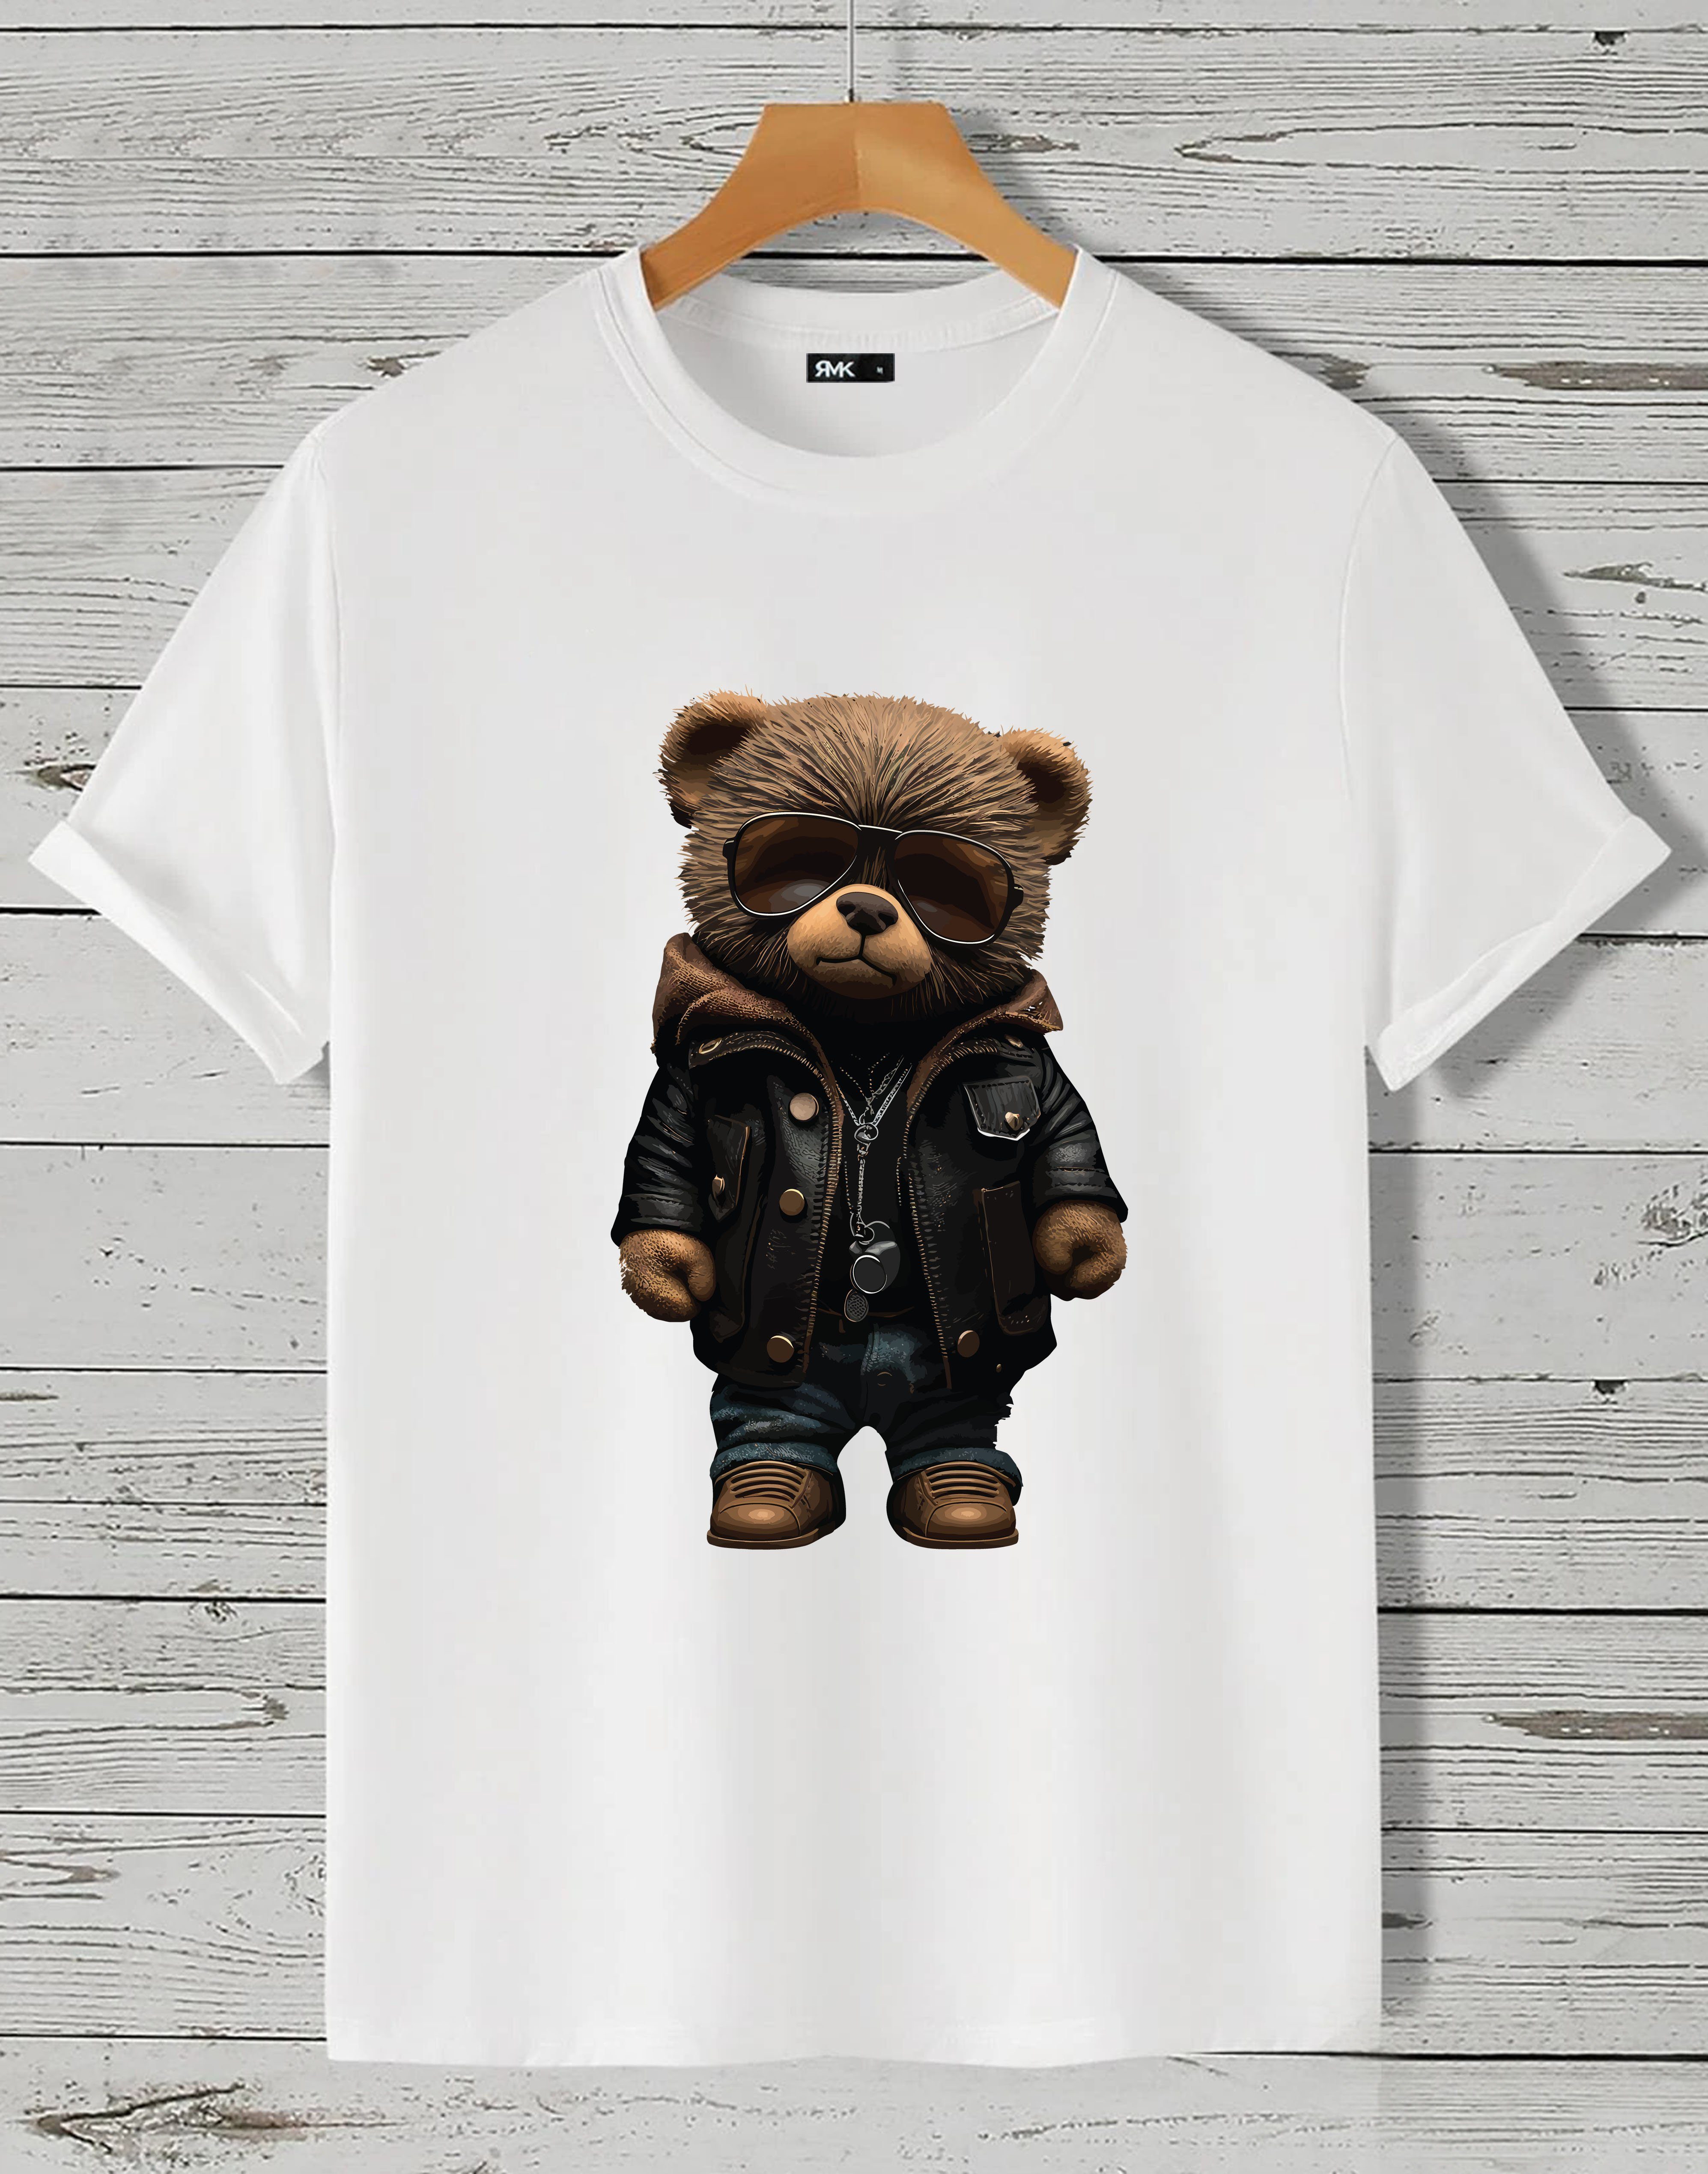 RMK T-Shirt Herren (Teddybär Baumwolle in Rundhals Weiß Druck Unifarbe, aus Basic Lederjacke) Print, lizenziertem Sonnenbrille mit Shirt